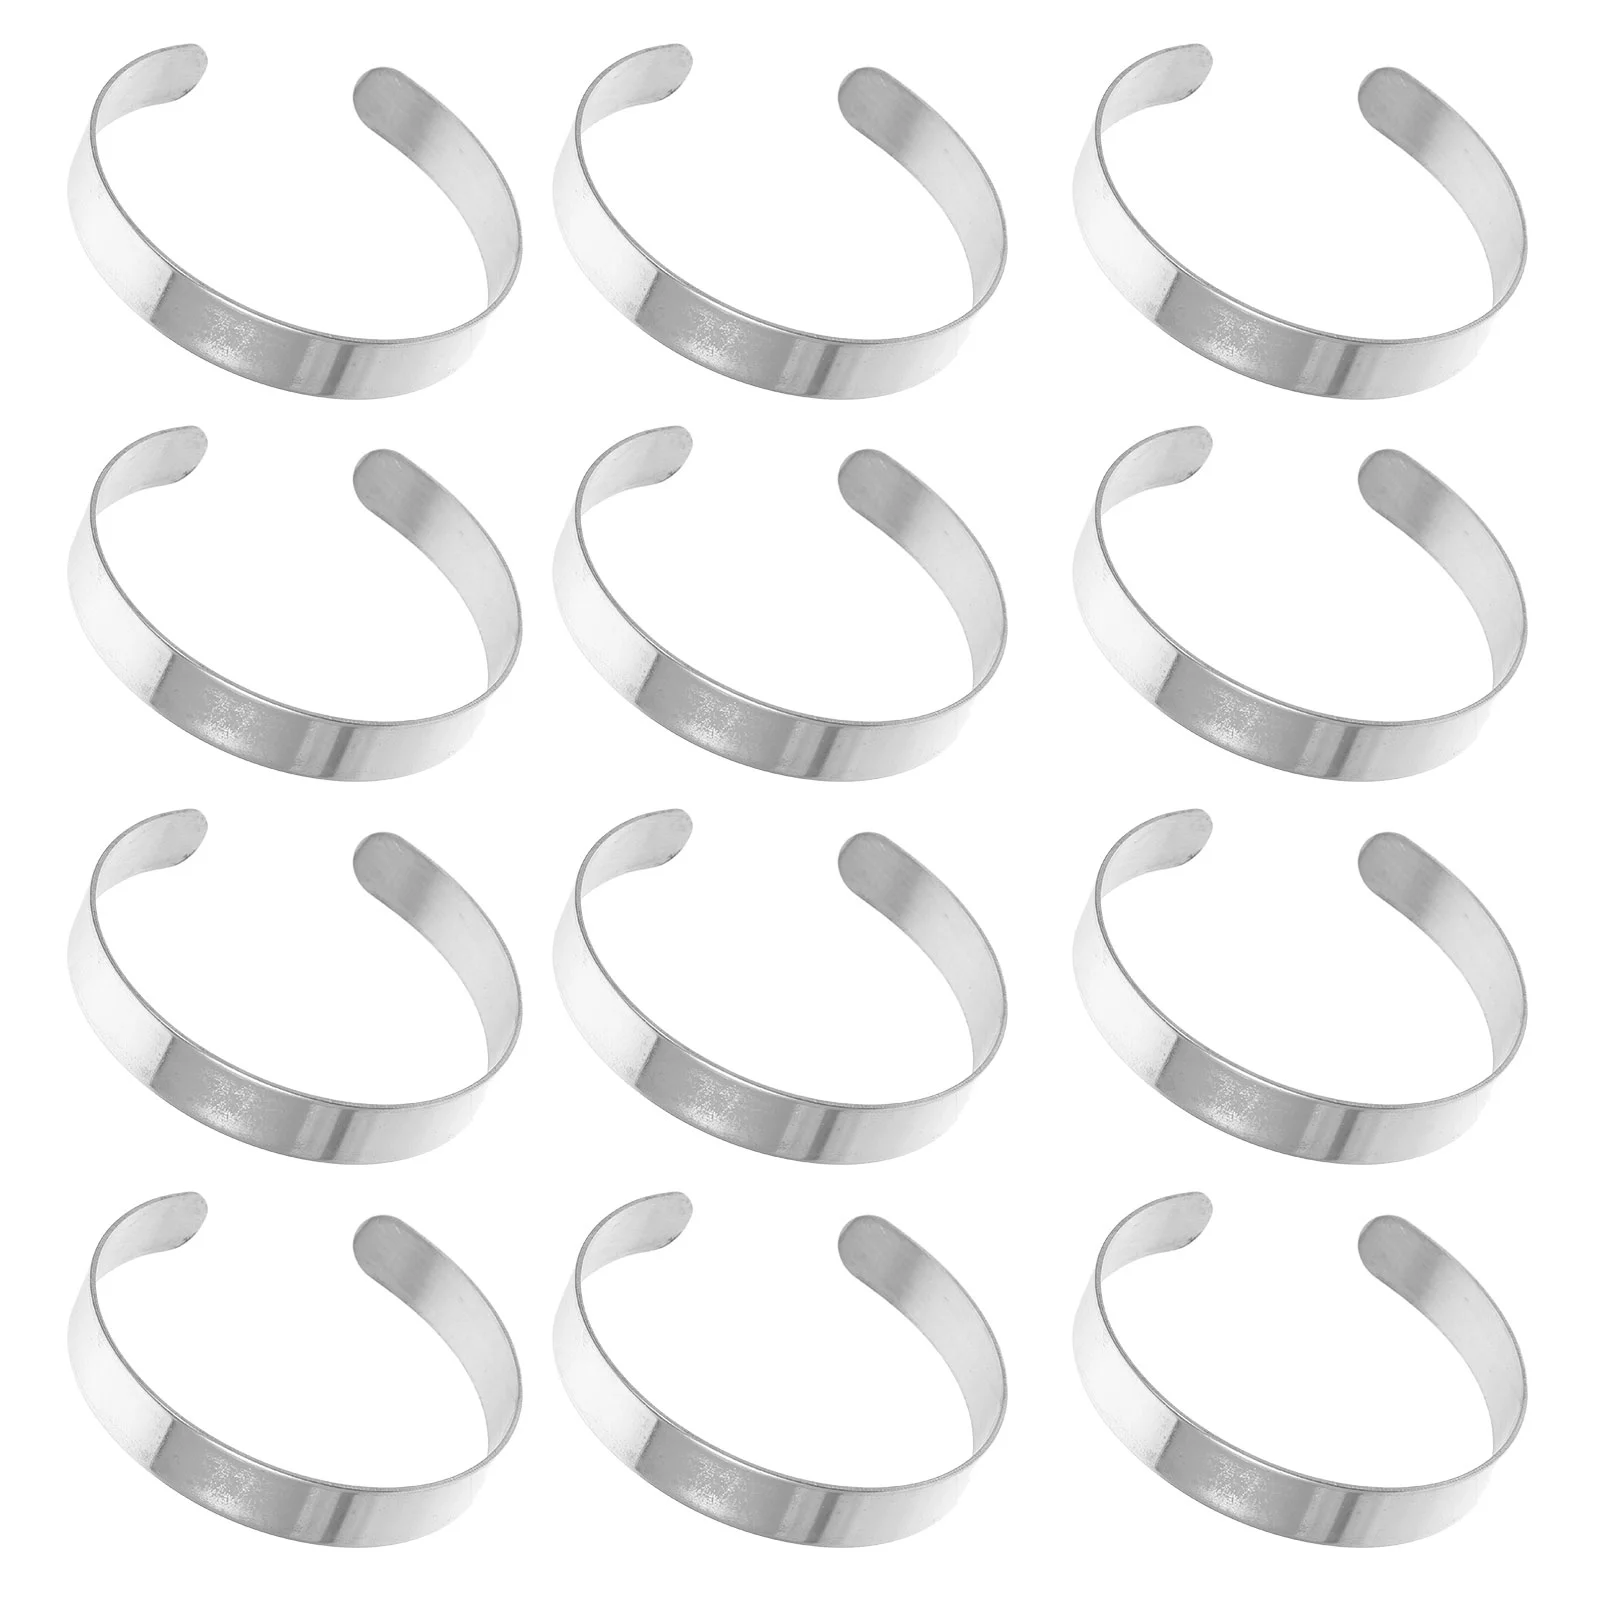 

10Pcs Bracelets Stamping Blank Curved Cuff Bangle DIY Bracelet Accessory